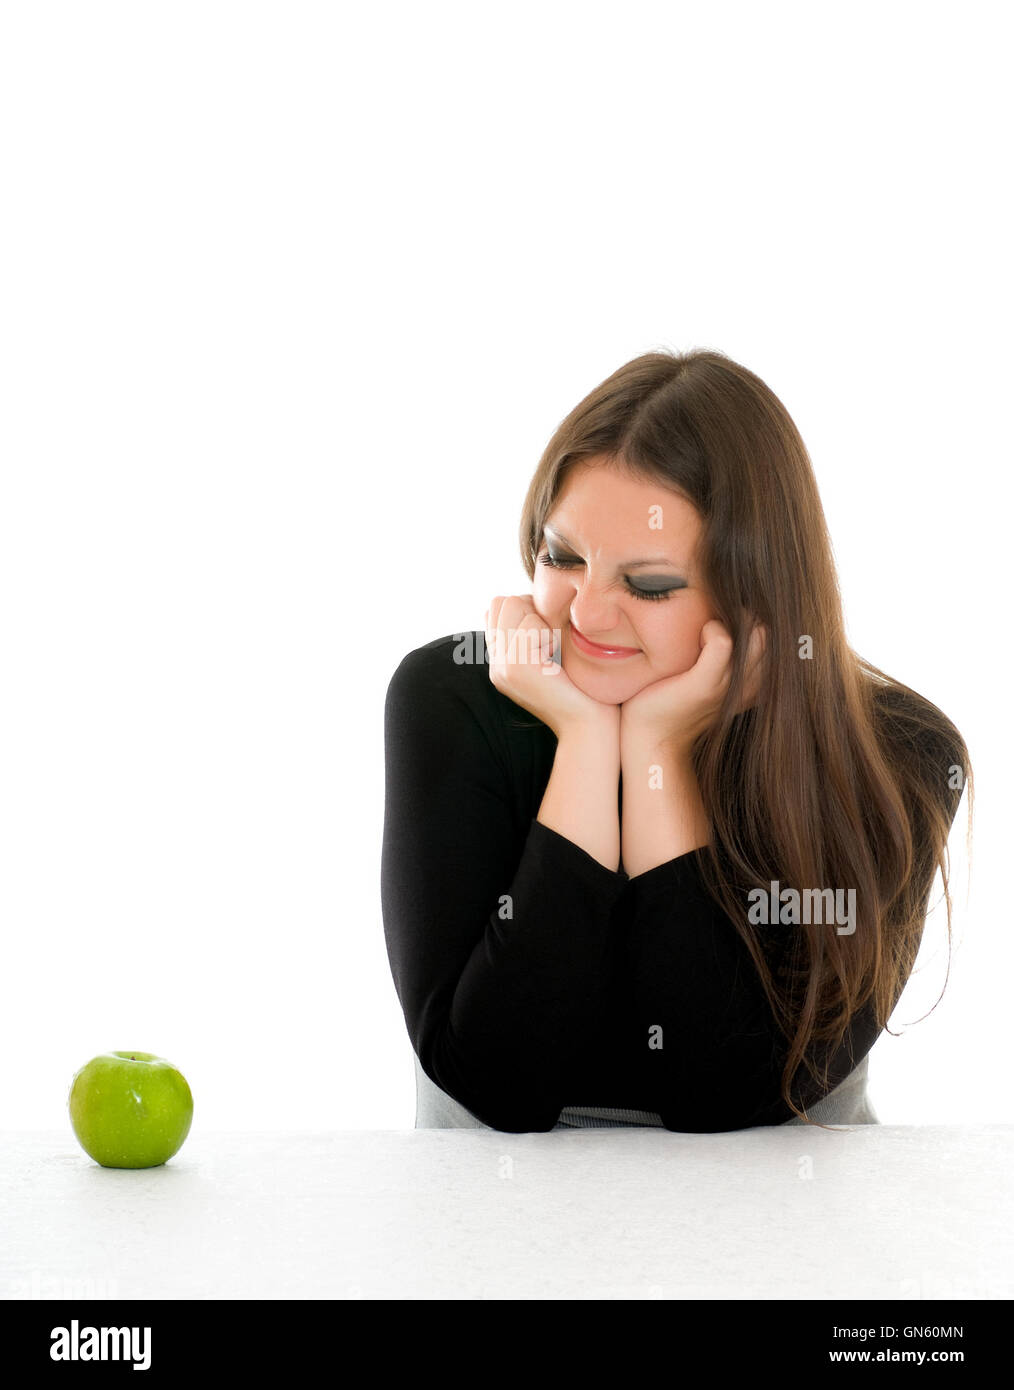 Chica con mueca en su cara y manzana verde Foto de stock